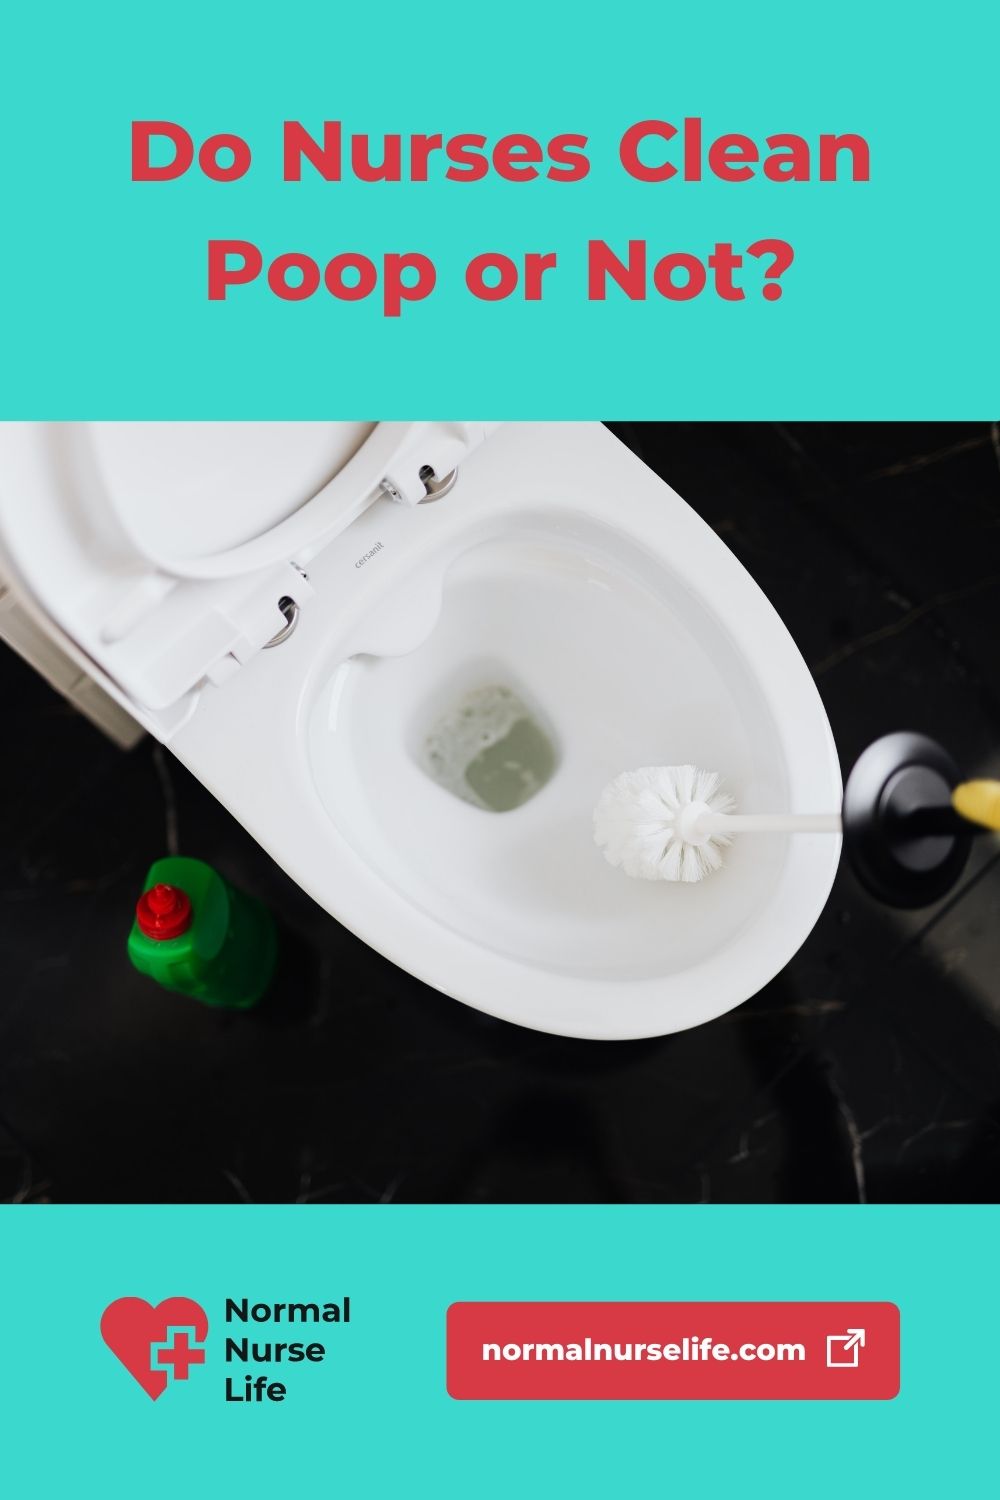 Do nurses clean poop or not